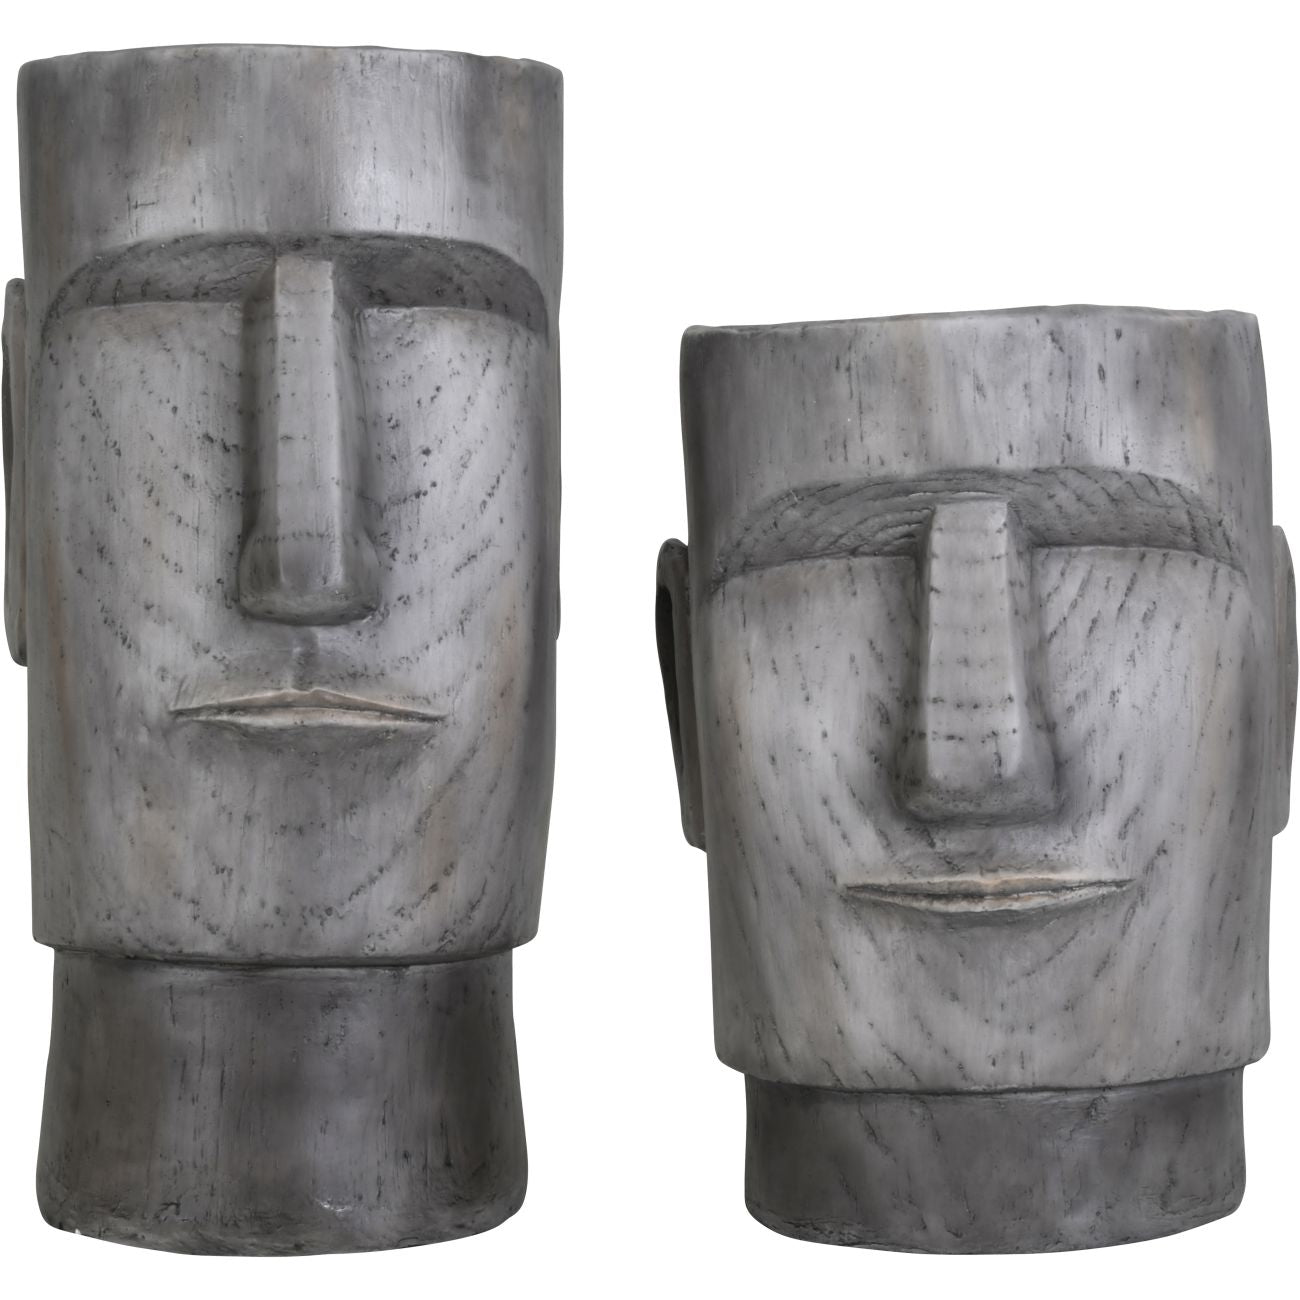 Moai Head Planter Small 36x35x42cm